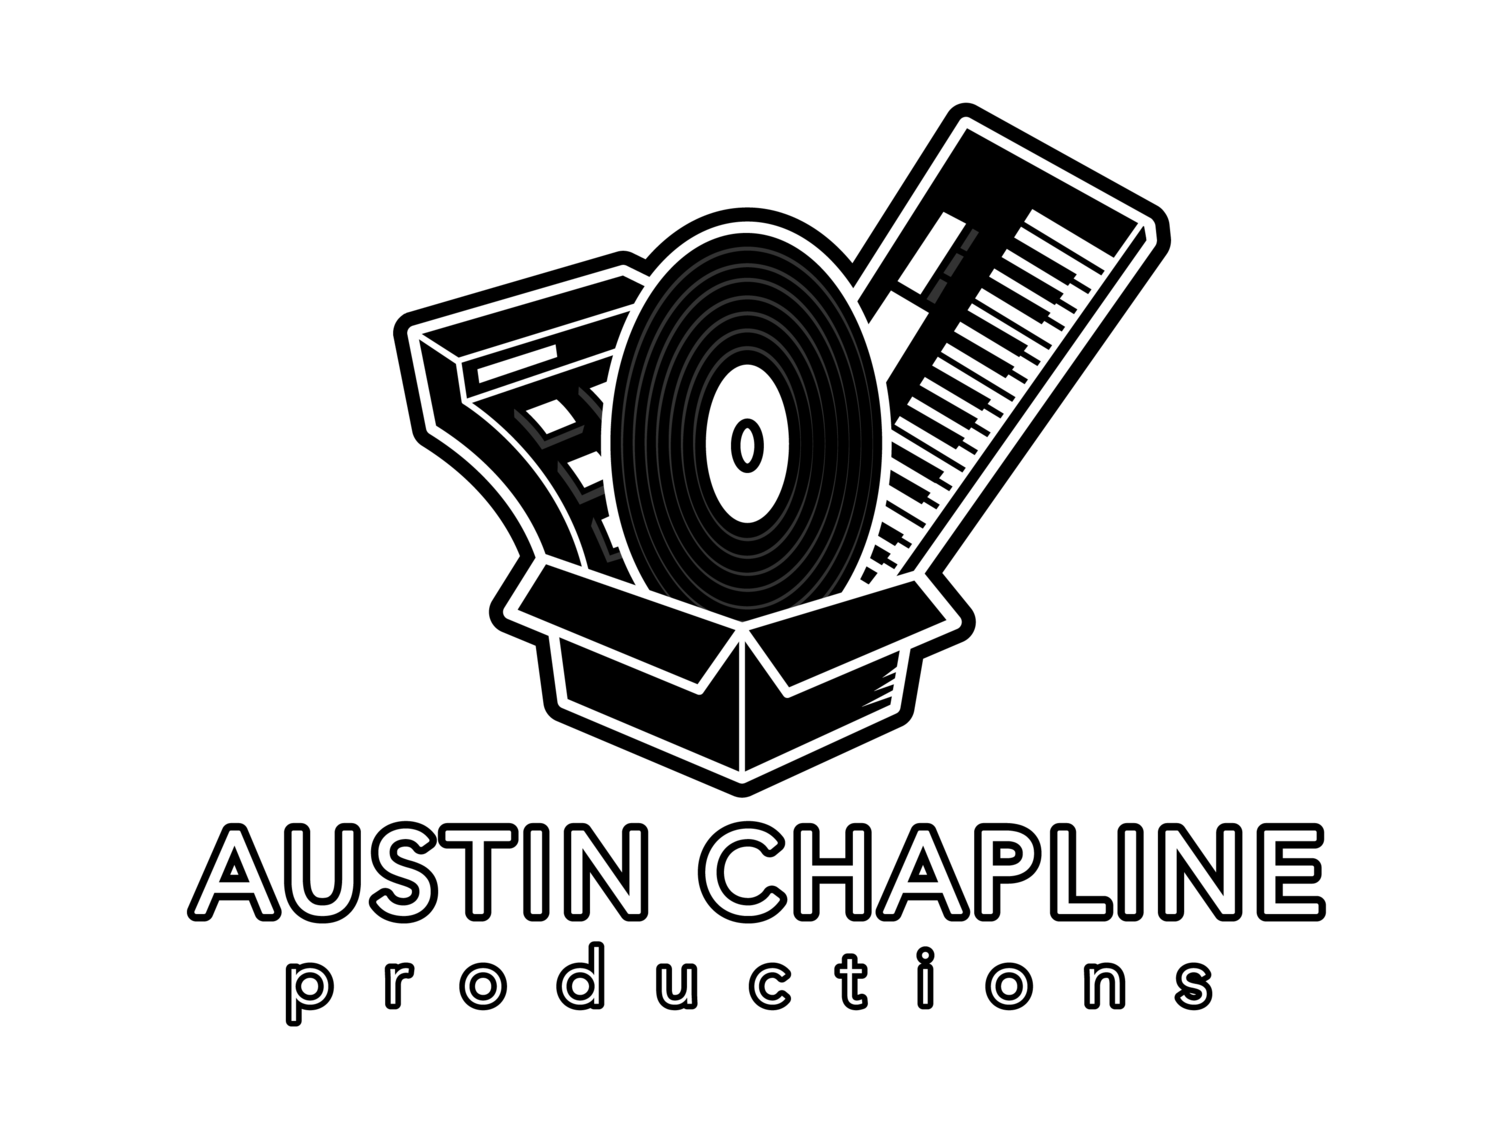 Austin Chapline Productions